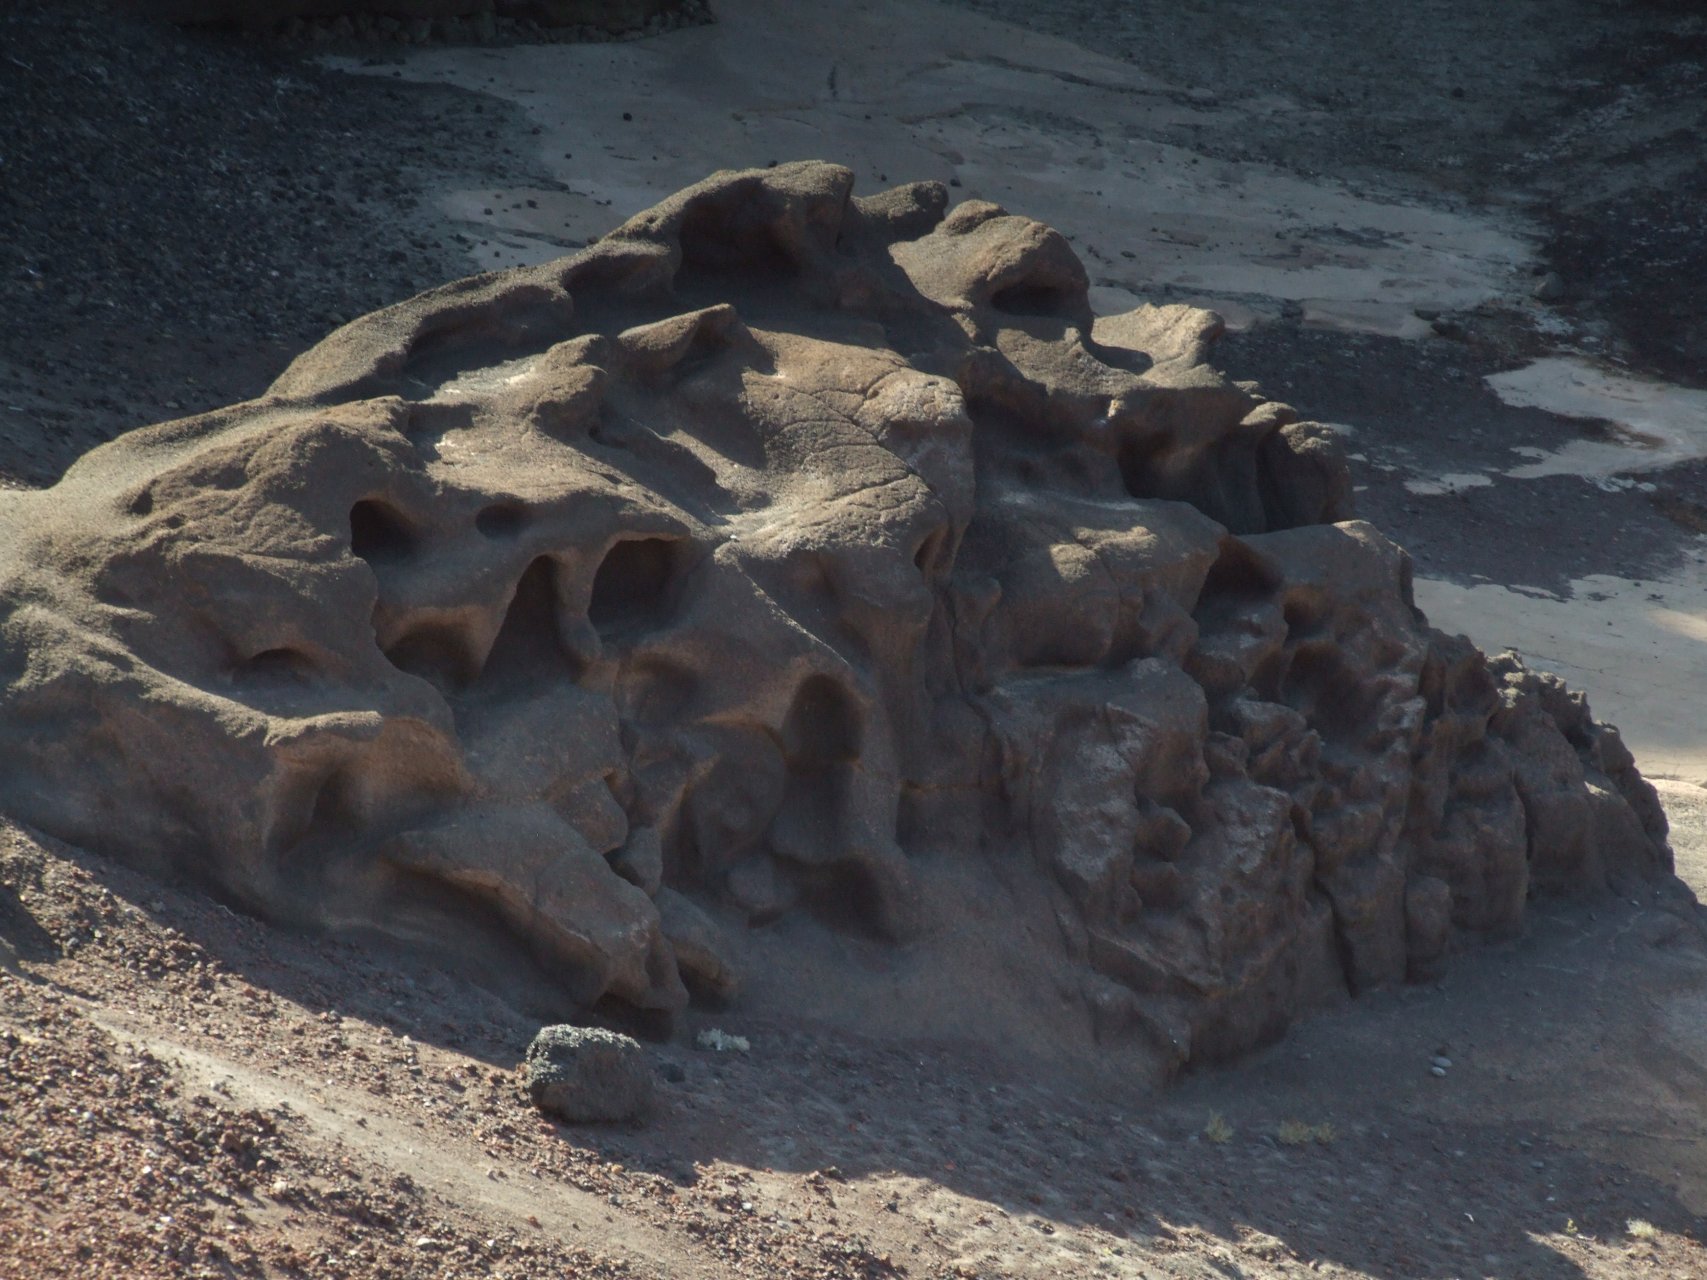 Krater El Golfo